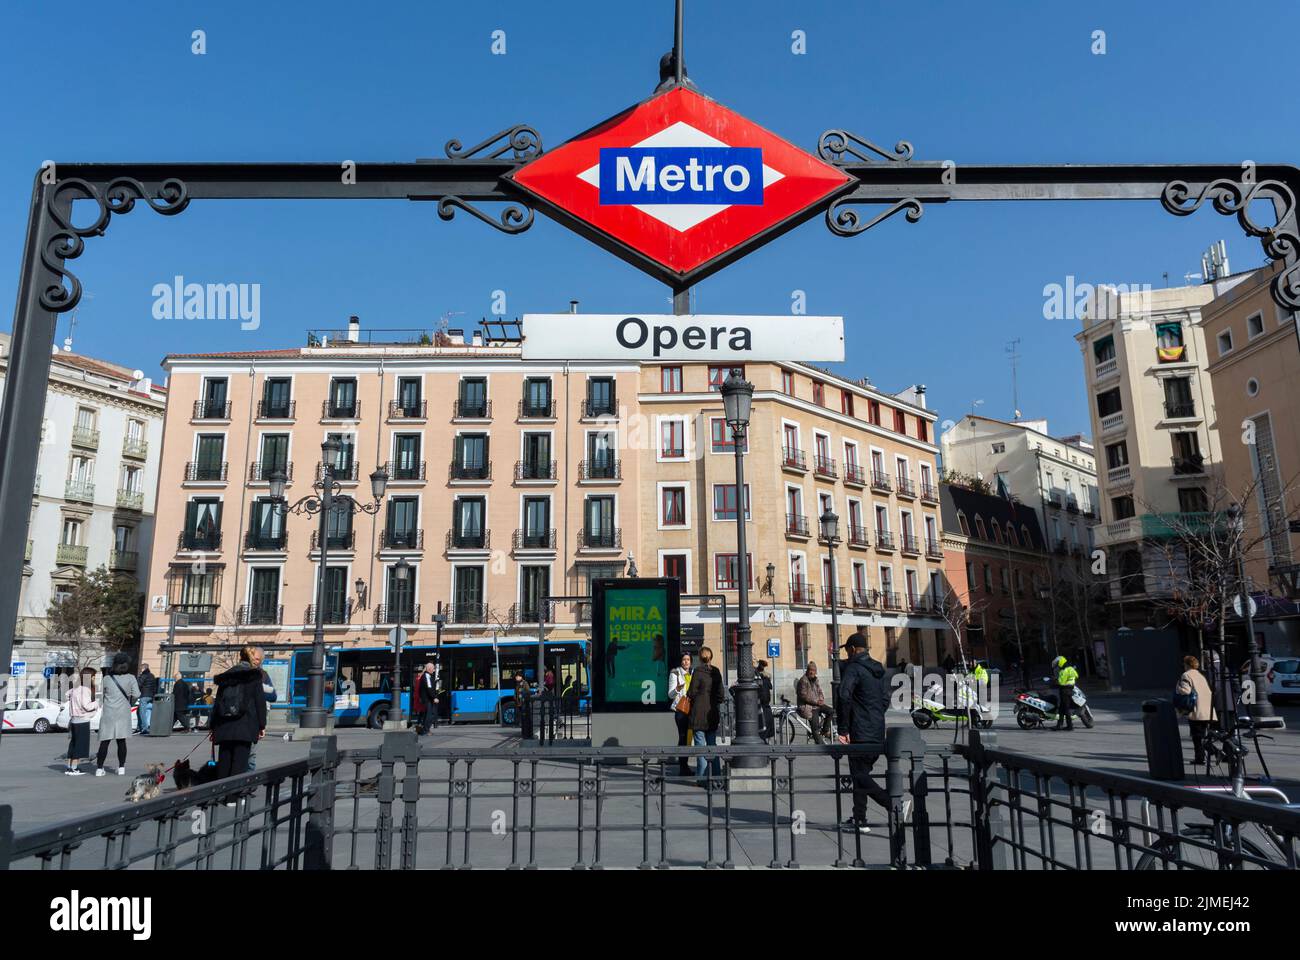 Madrid, España, Escena, Gente, Turismo, Fuera del metro, metro, señal de la estación de la ópera, escena de la calle Foto de stock